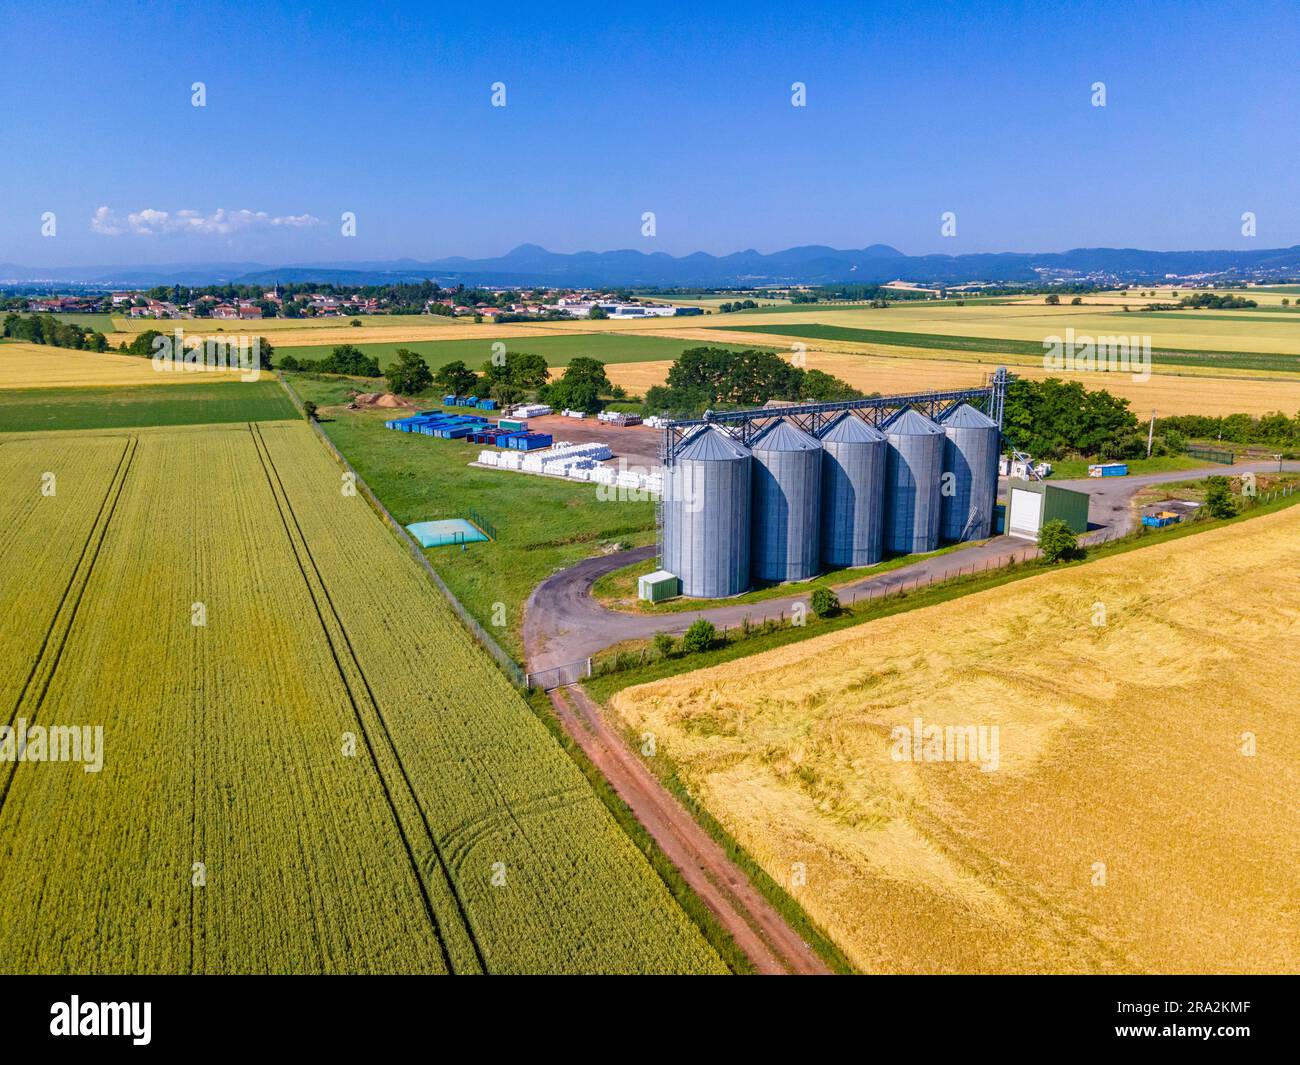 France, Puy de Dome, champs de céréales et silos à grains, plaine de la Limagne, près de Riom, chaîne des Puys en arrière-plan (vue aérienne) Banque D'Images